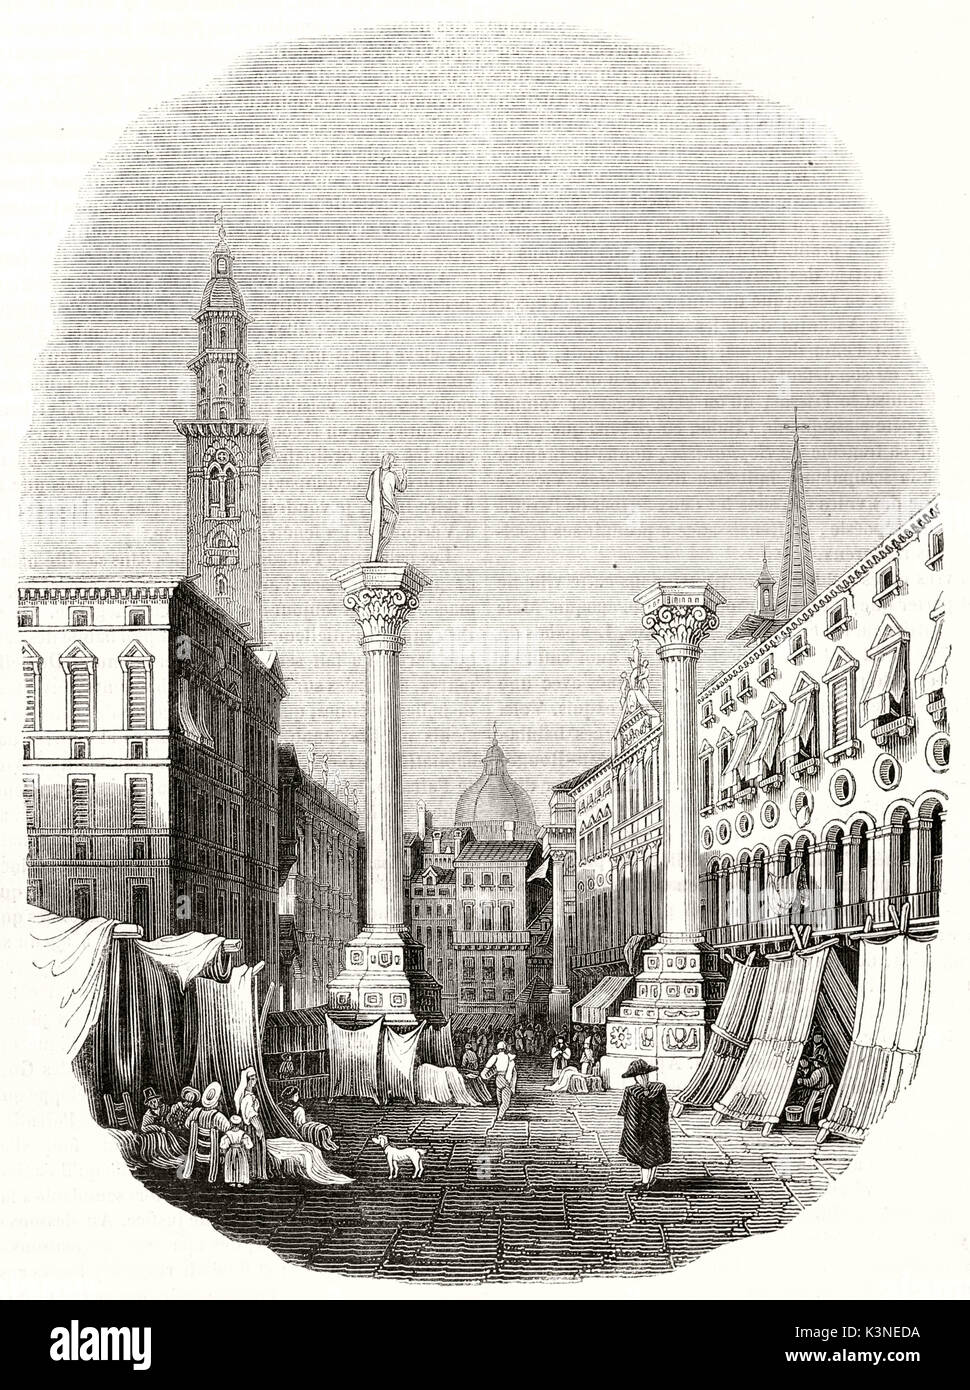 Antigua vista de la Piazza dei Signori (Lord's Square), Vicenza, Italia, ilustración dispuestos en un marco ovalado con bordes descoloridos. Autor publicado no identificados en el Magasin pintoresco París 1839 Foto de stock